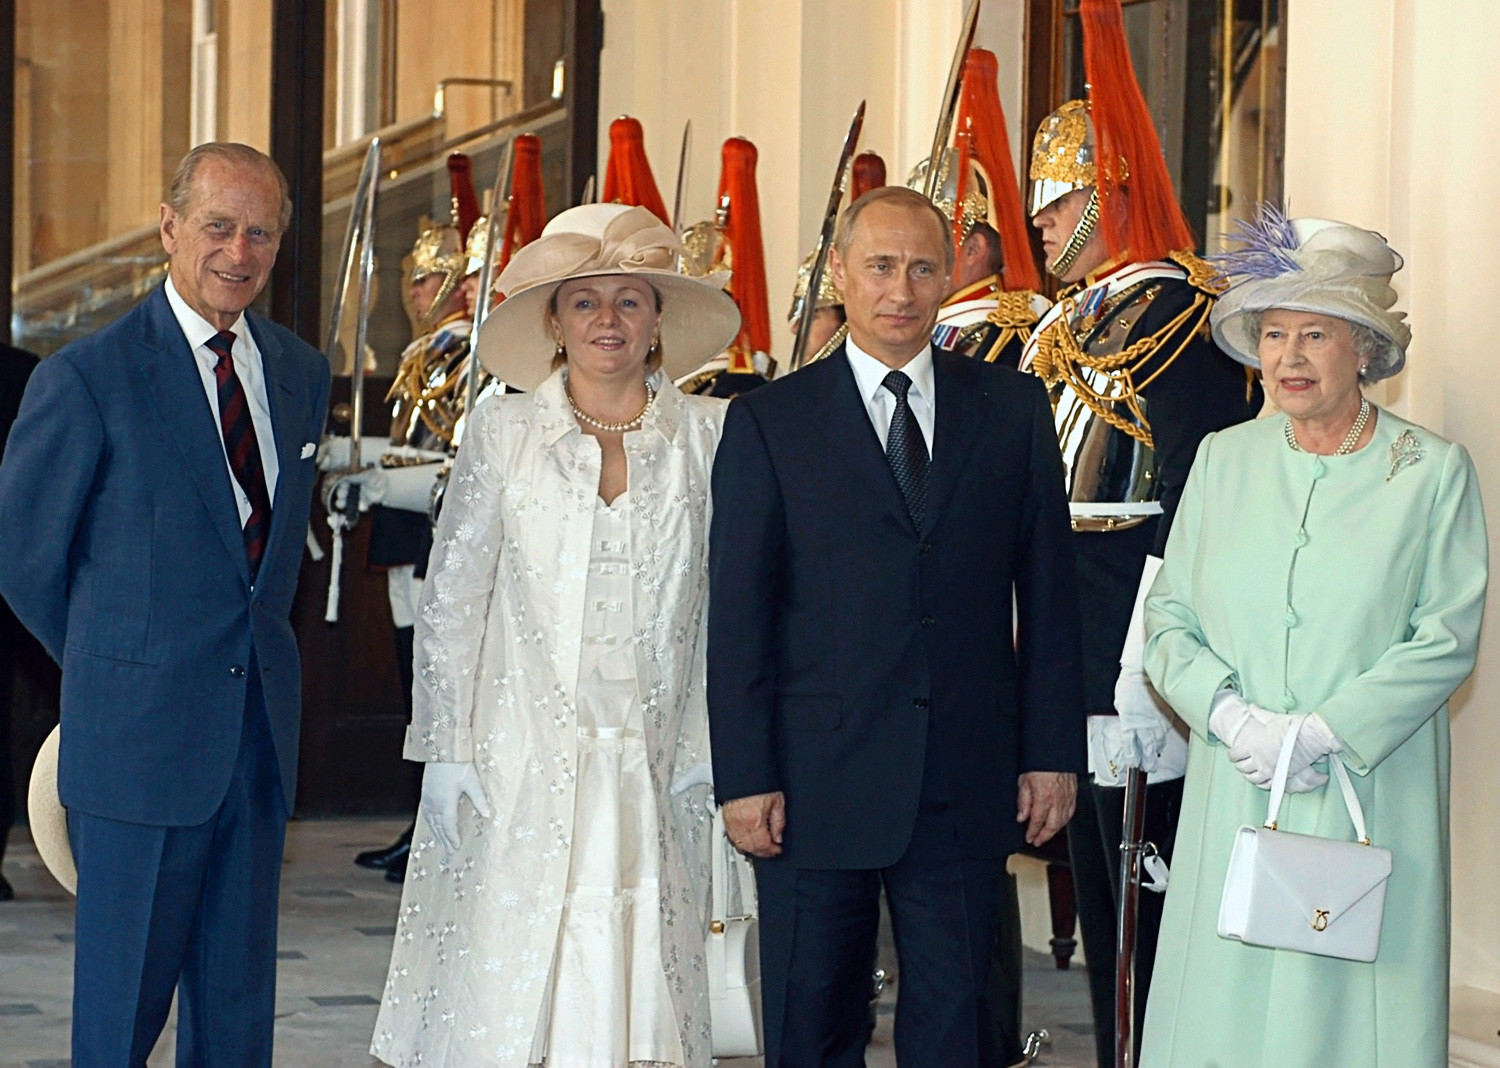 Le président russe Vladimir Poutine et Lioudmila Poutine au cours d’une rencontre avec la reine du Royaume-Uni Élisabeth II et son époux le duc d’Édimbourg, le prince Philip, à Londres.